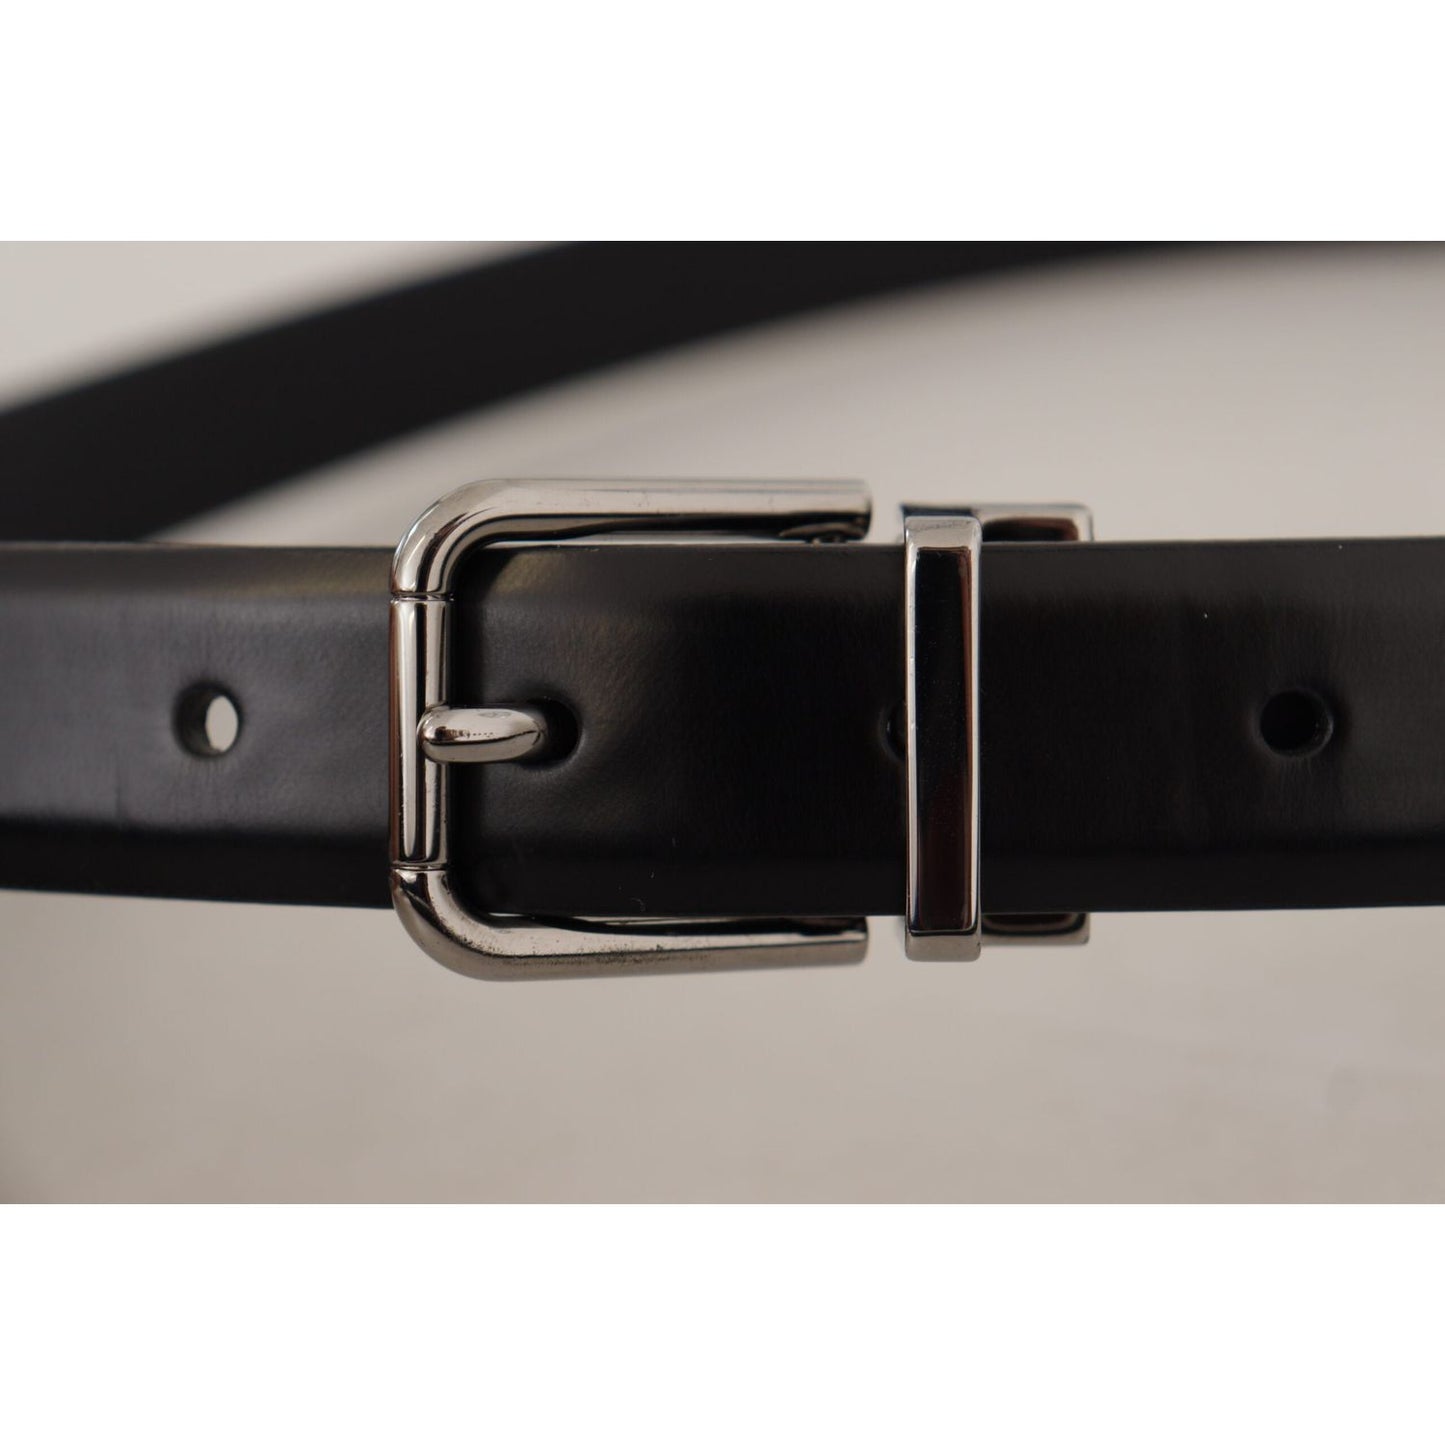 Dolce & Gabbana Elegant Black Leather Belt with Metal Buckle black-calf-leather-metal-logo-buckle-belt